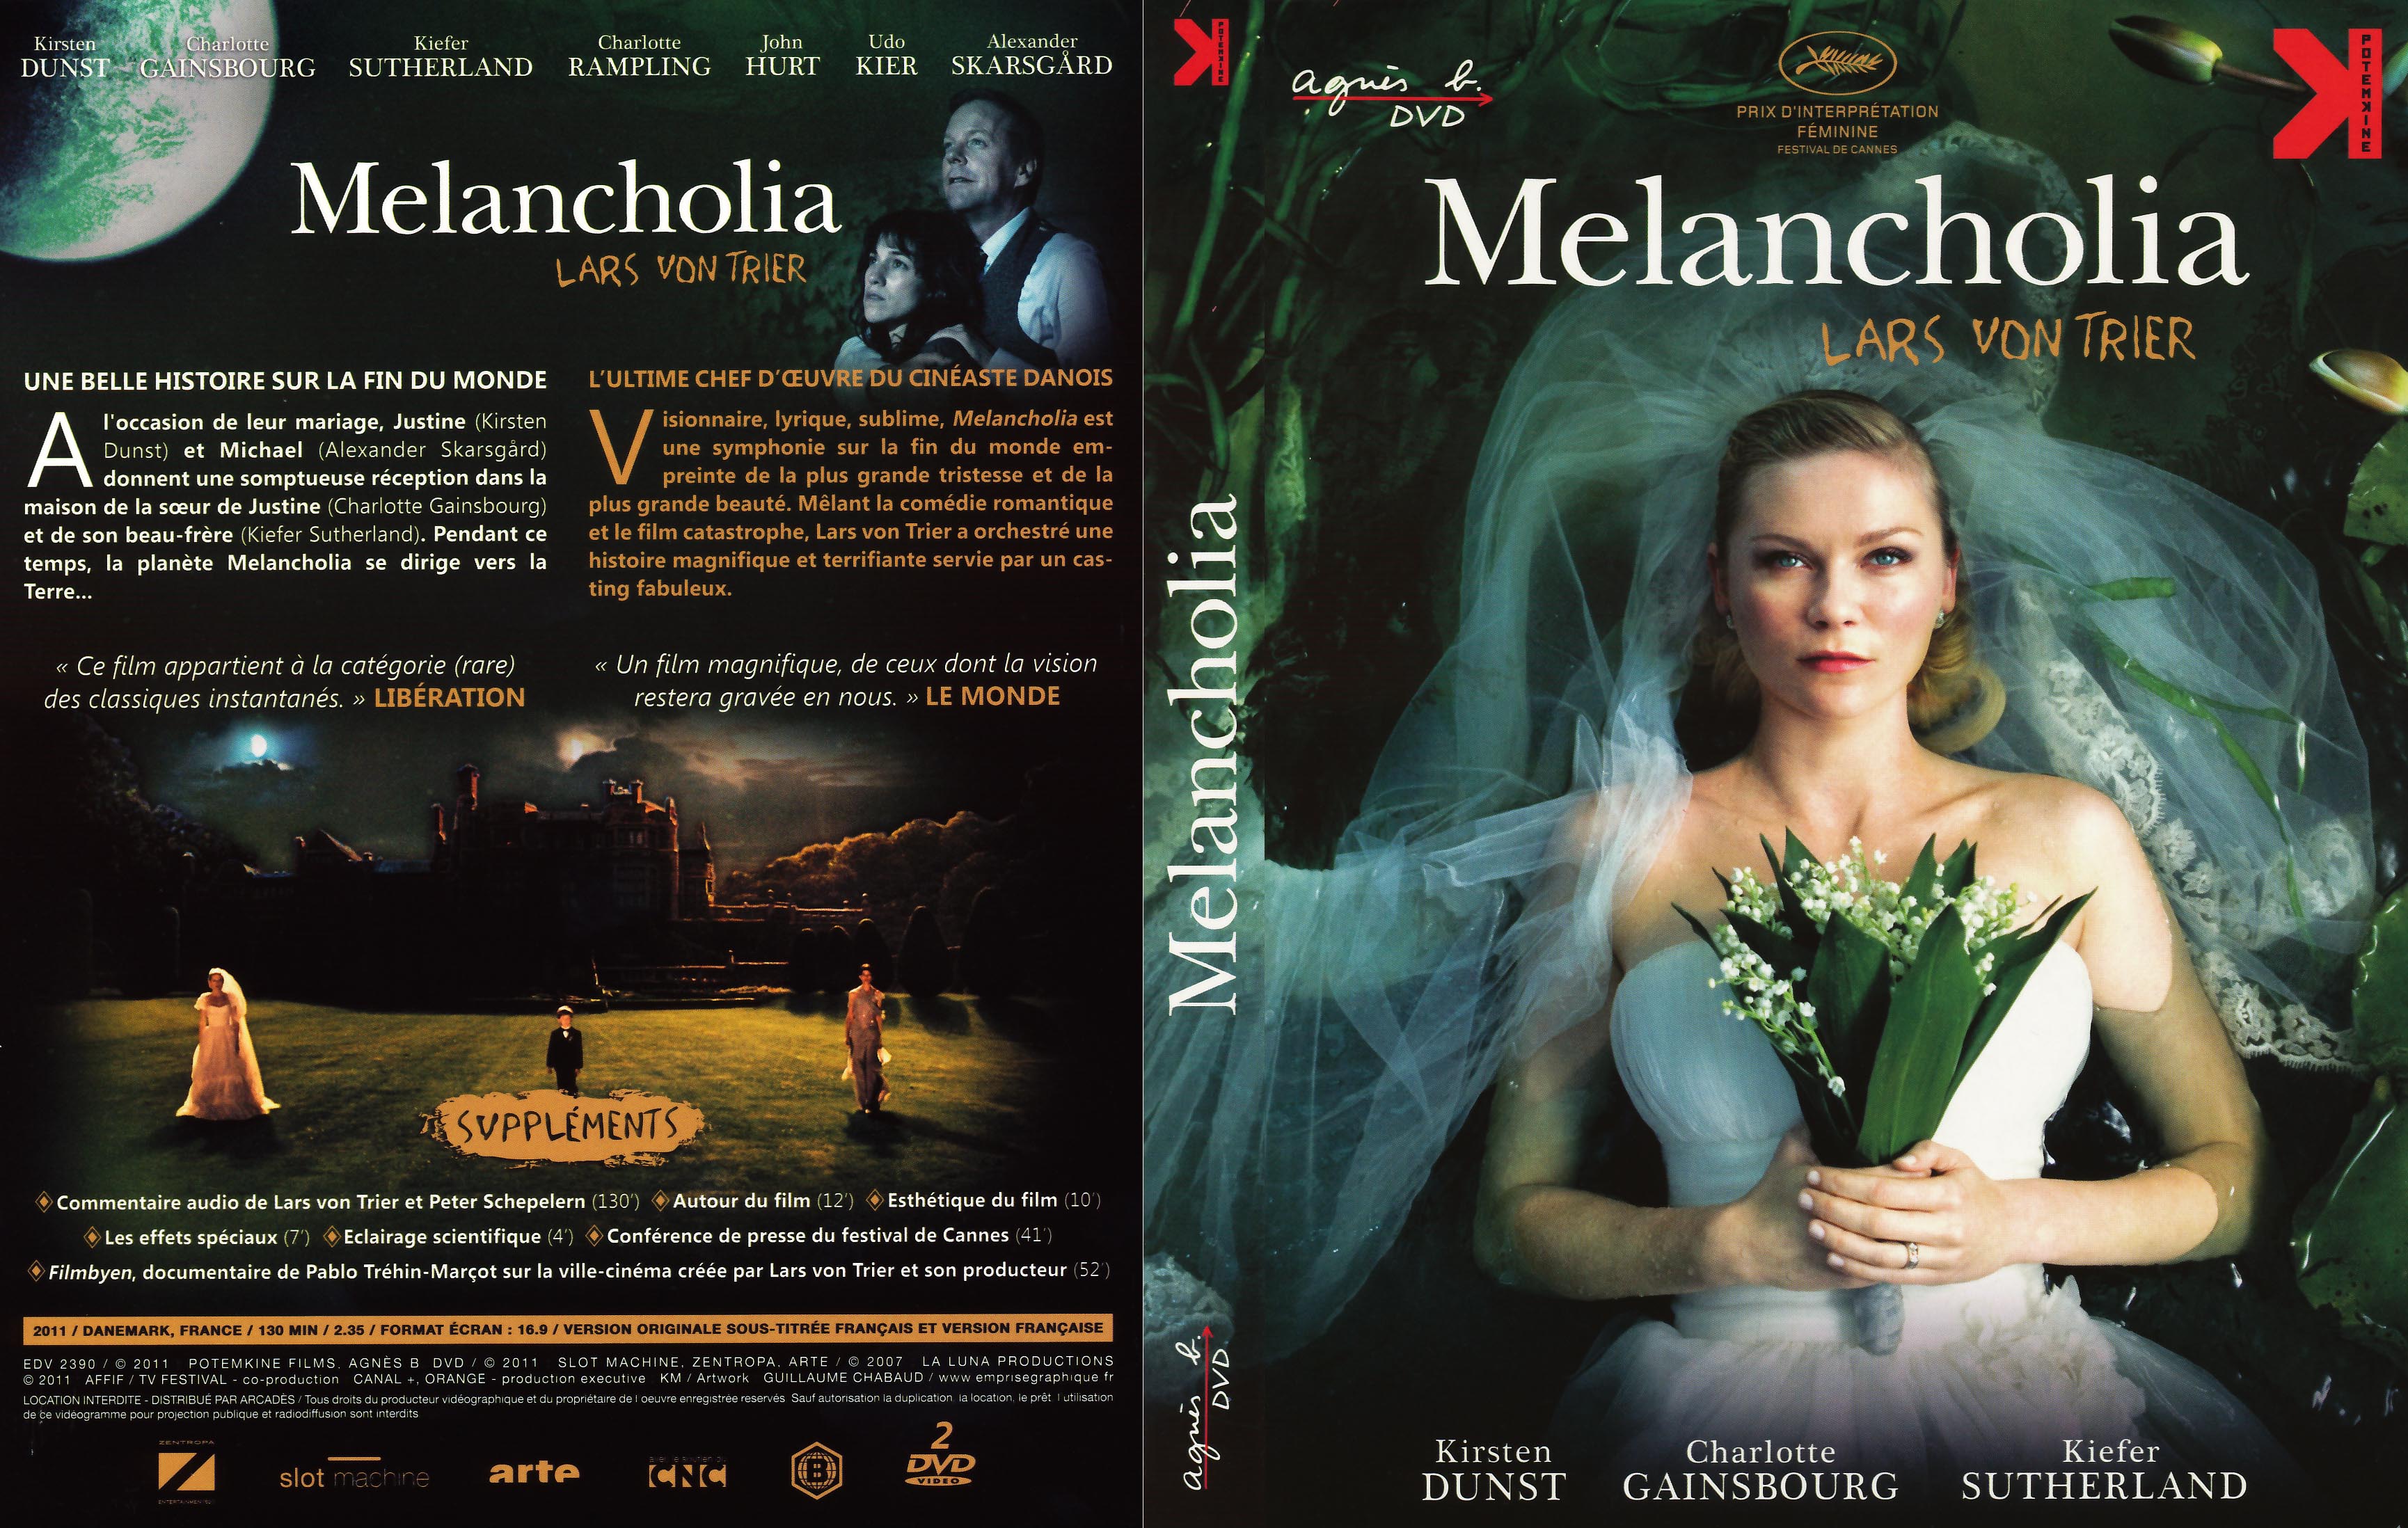 Jaquette DVD Melancholia v2